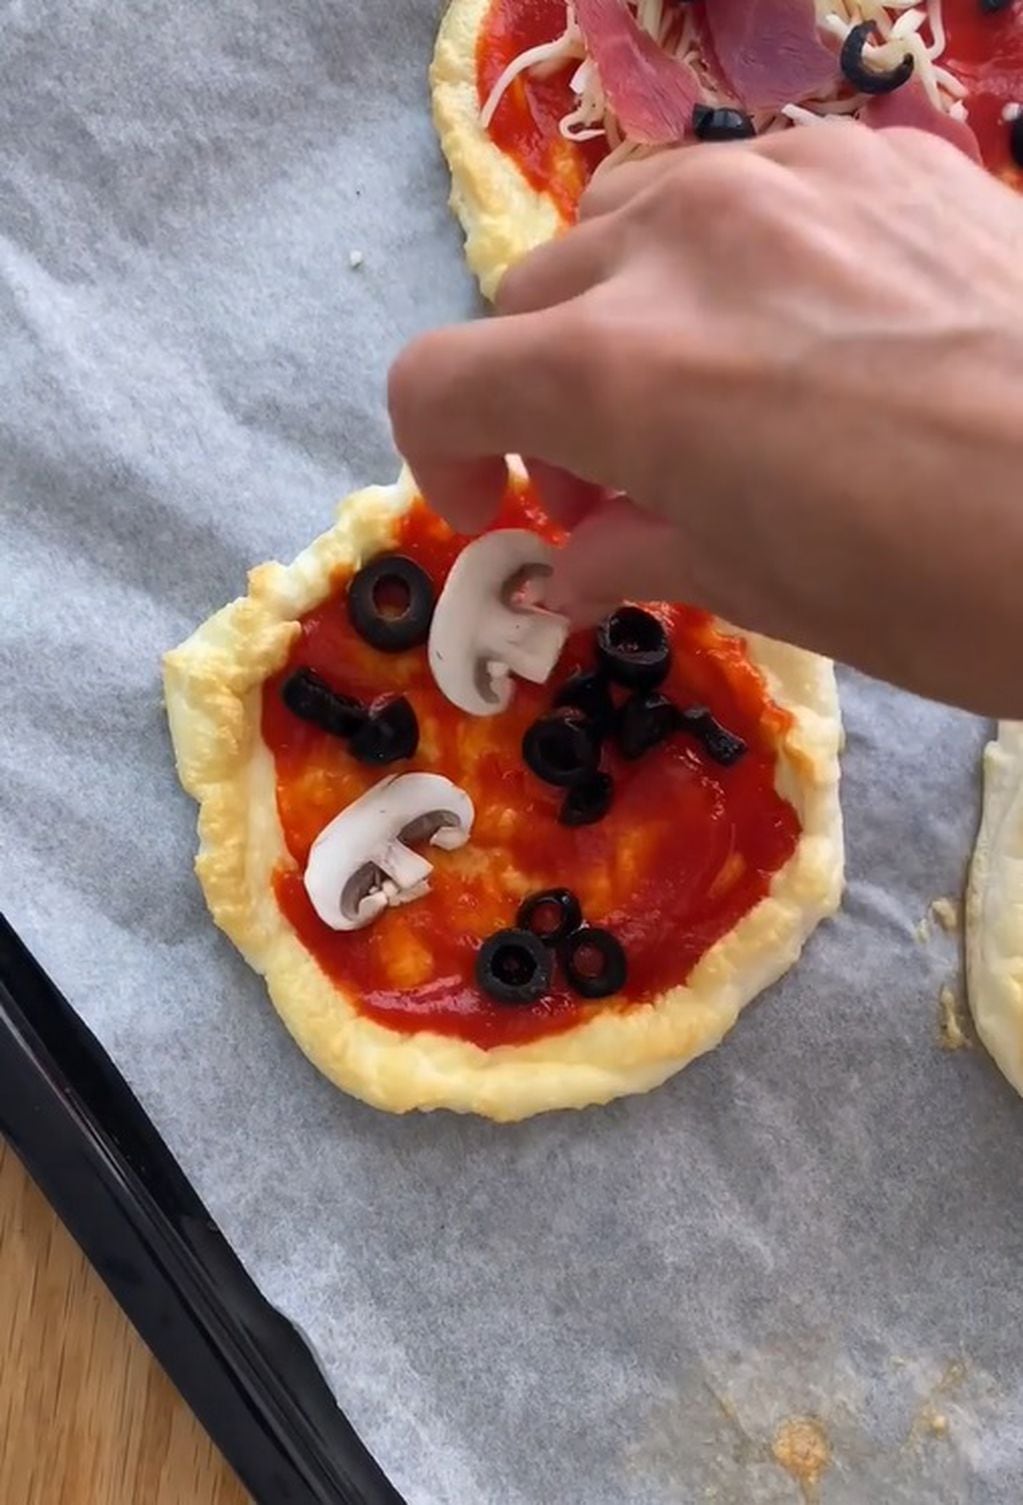 Pizza nube con 1 ingrediente: la receta furor en redes